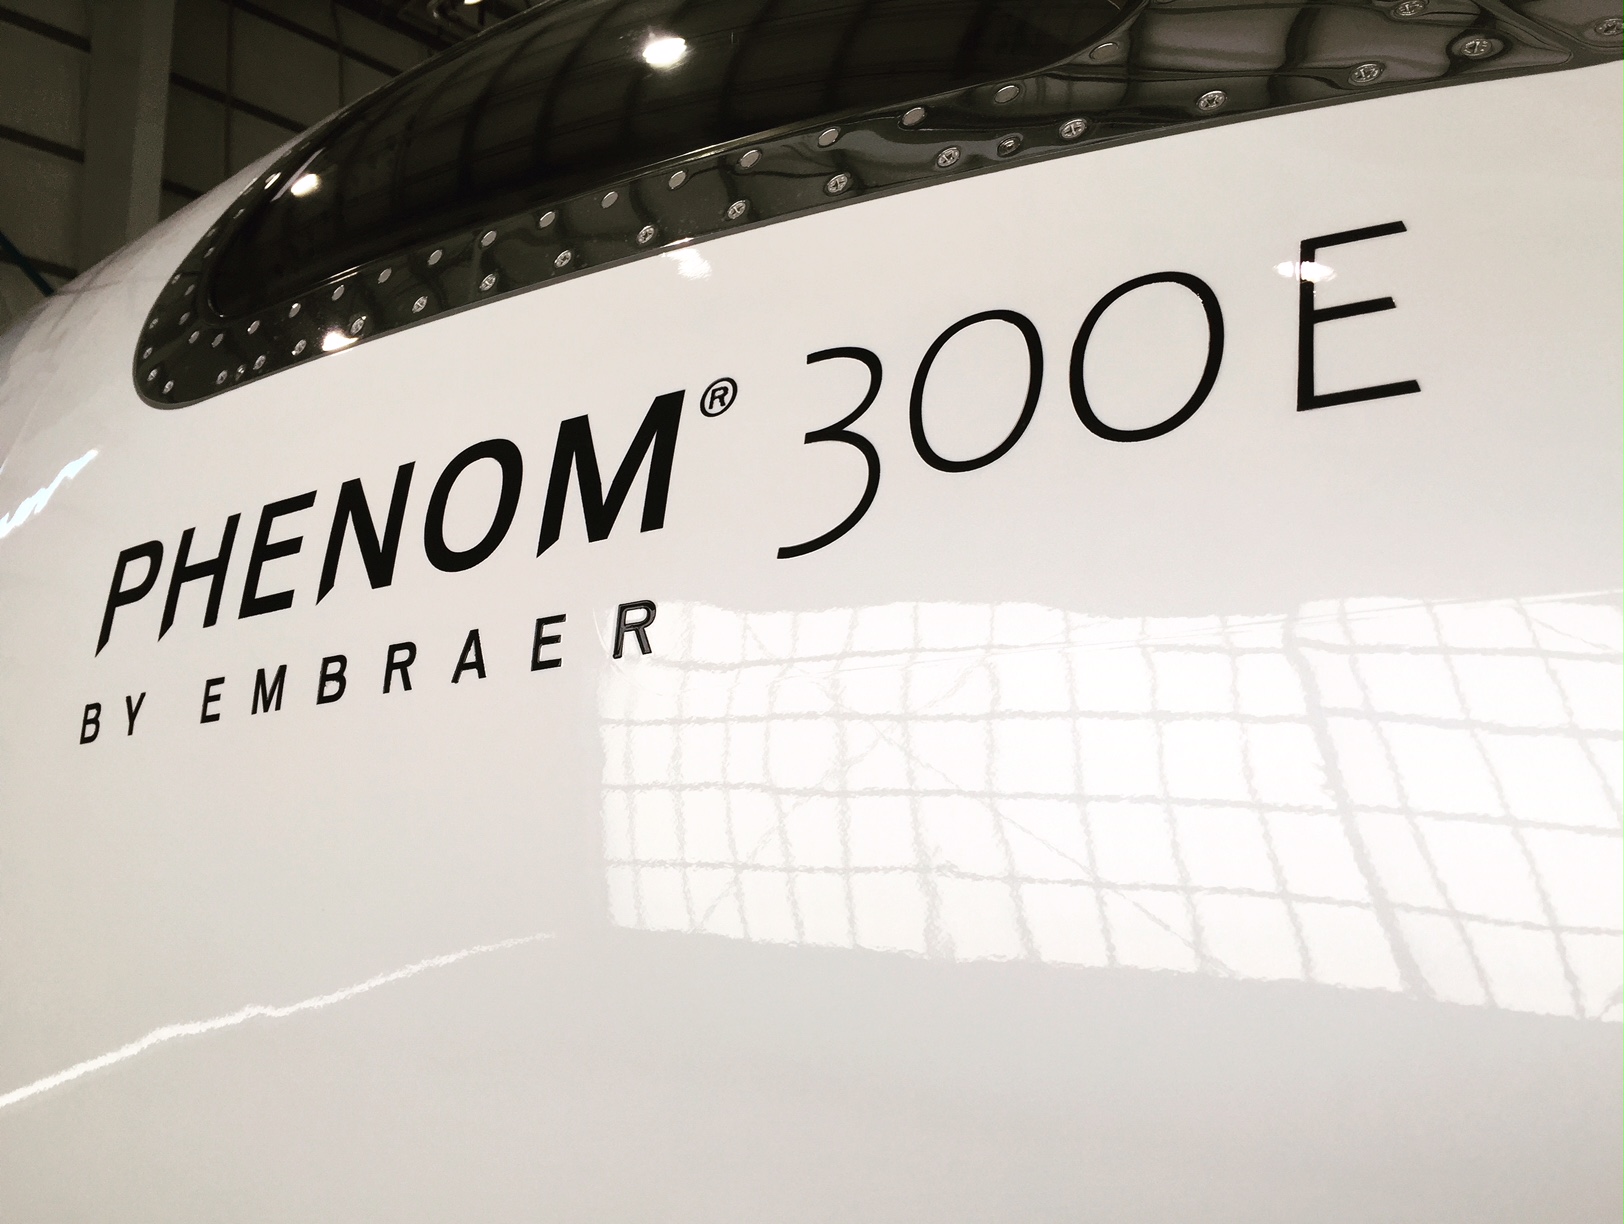 Phenom 300E - Altivation Aircraft